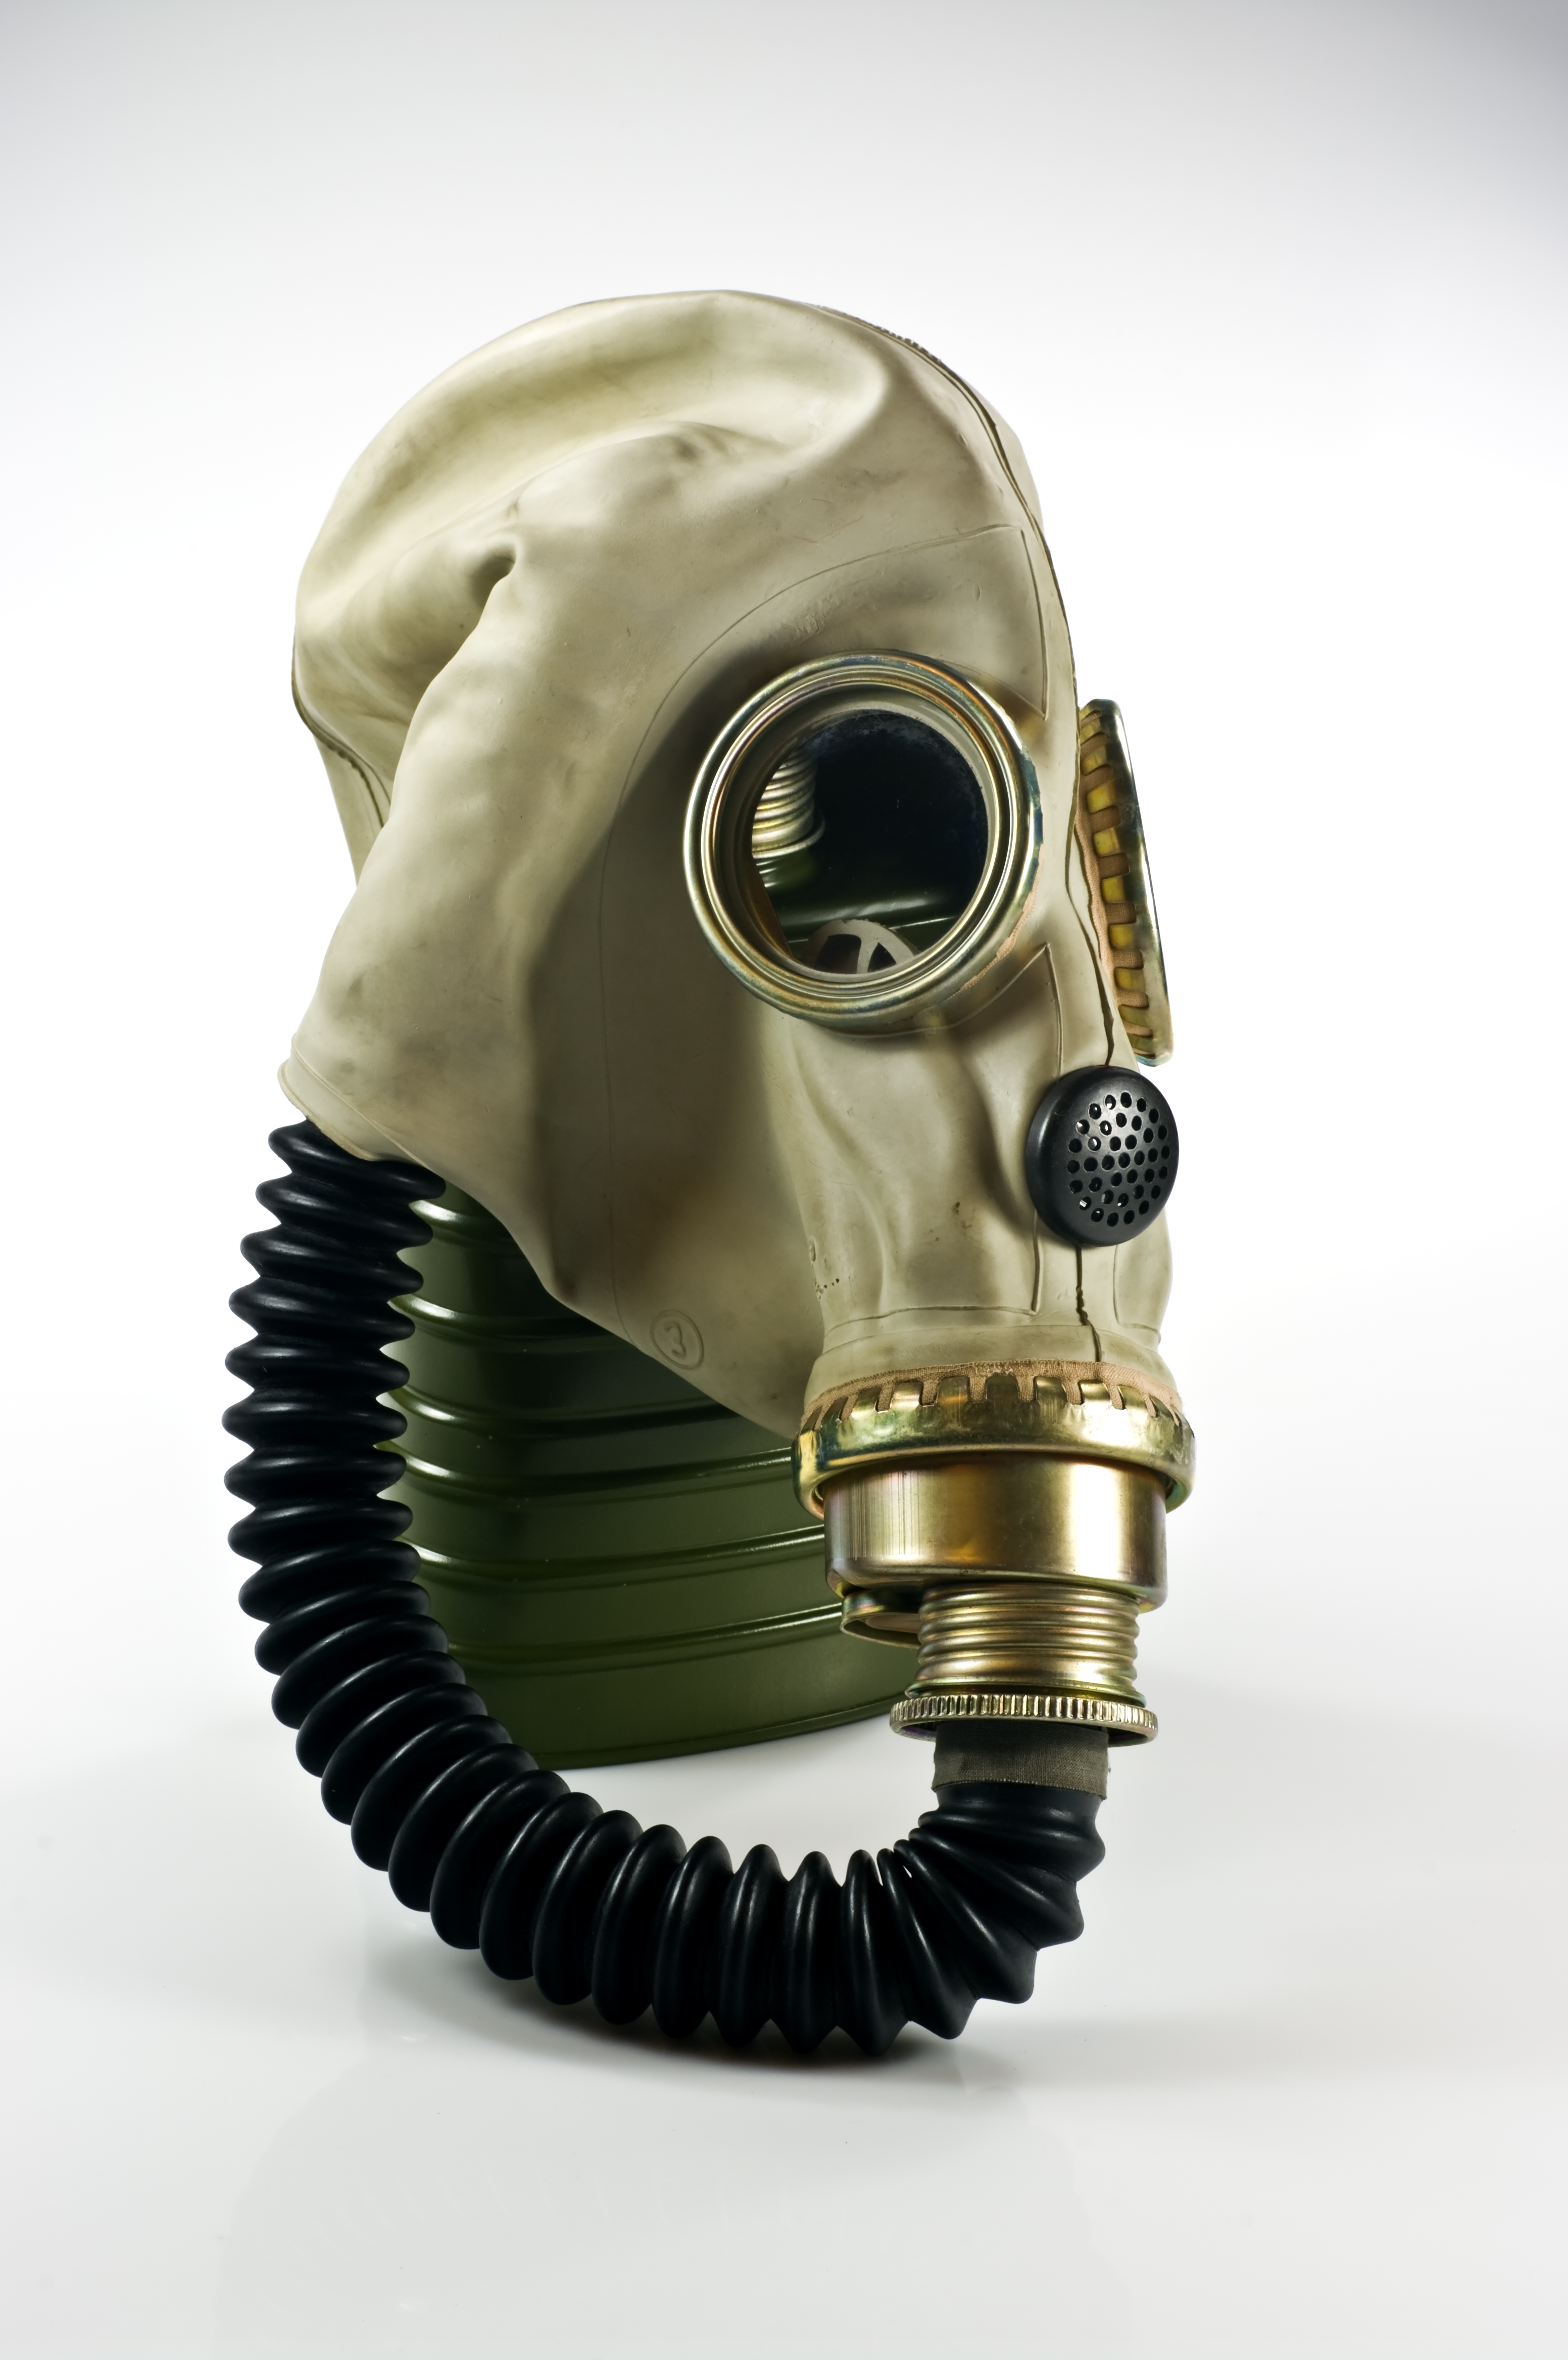 Gas mask - Wikipedia